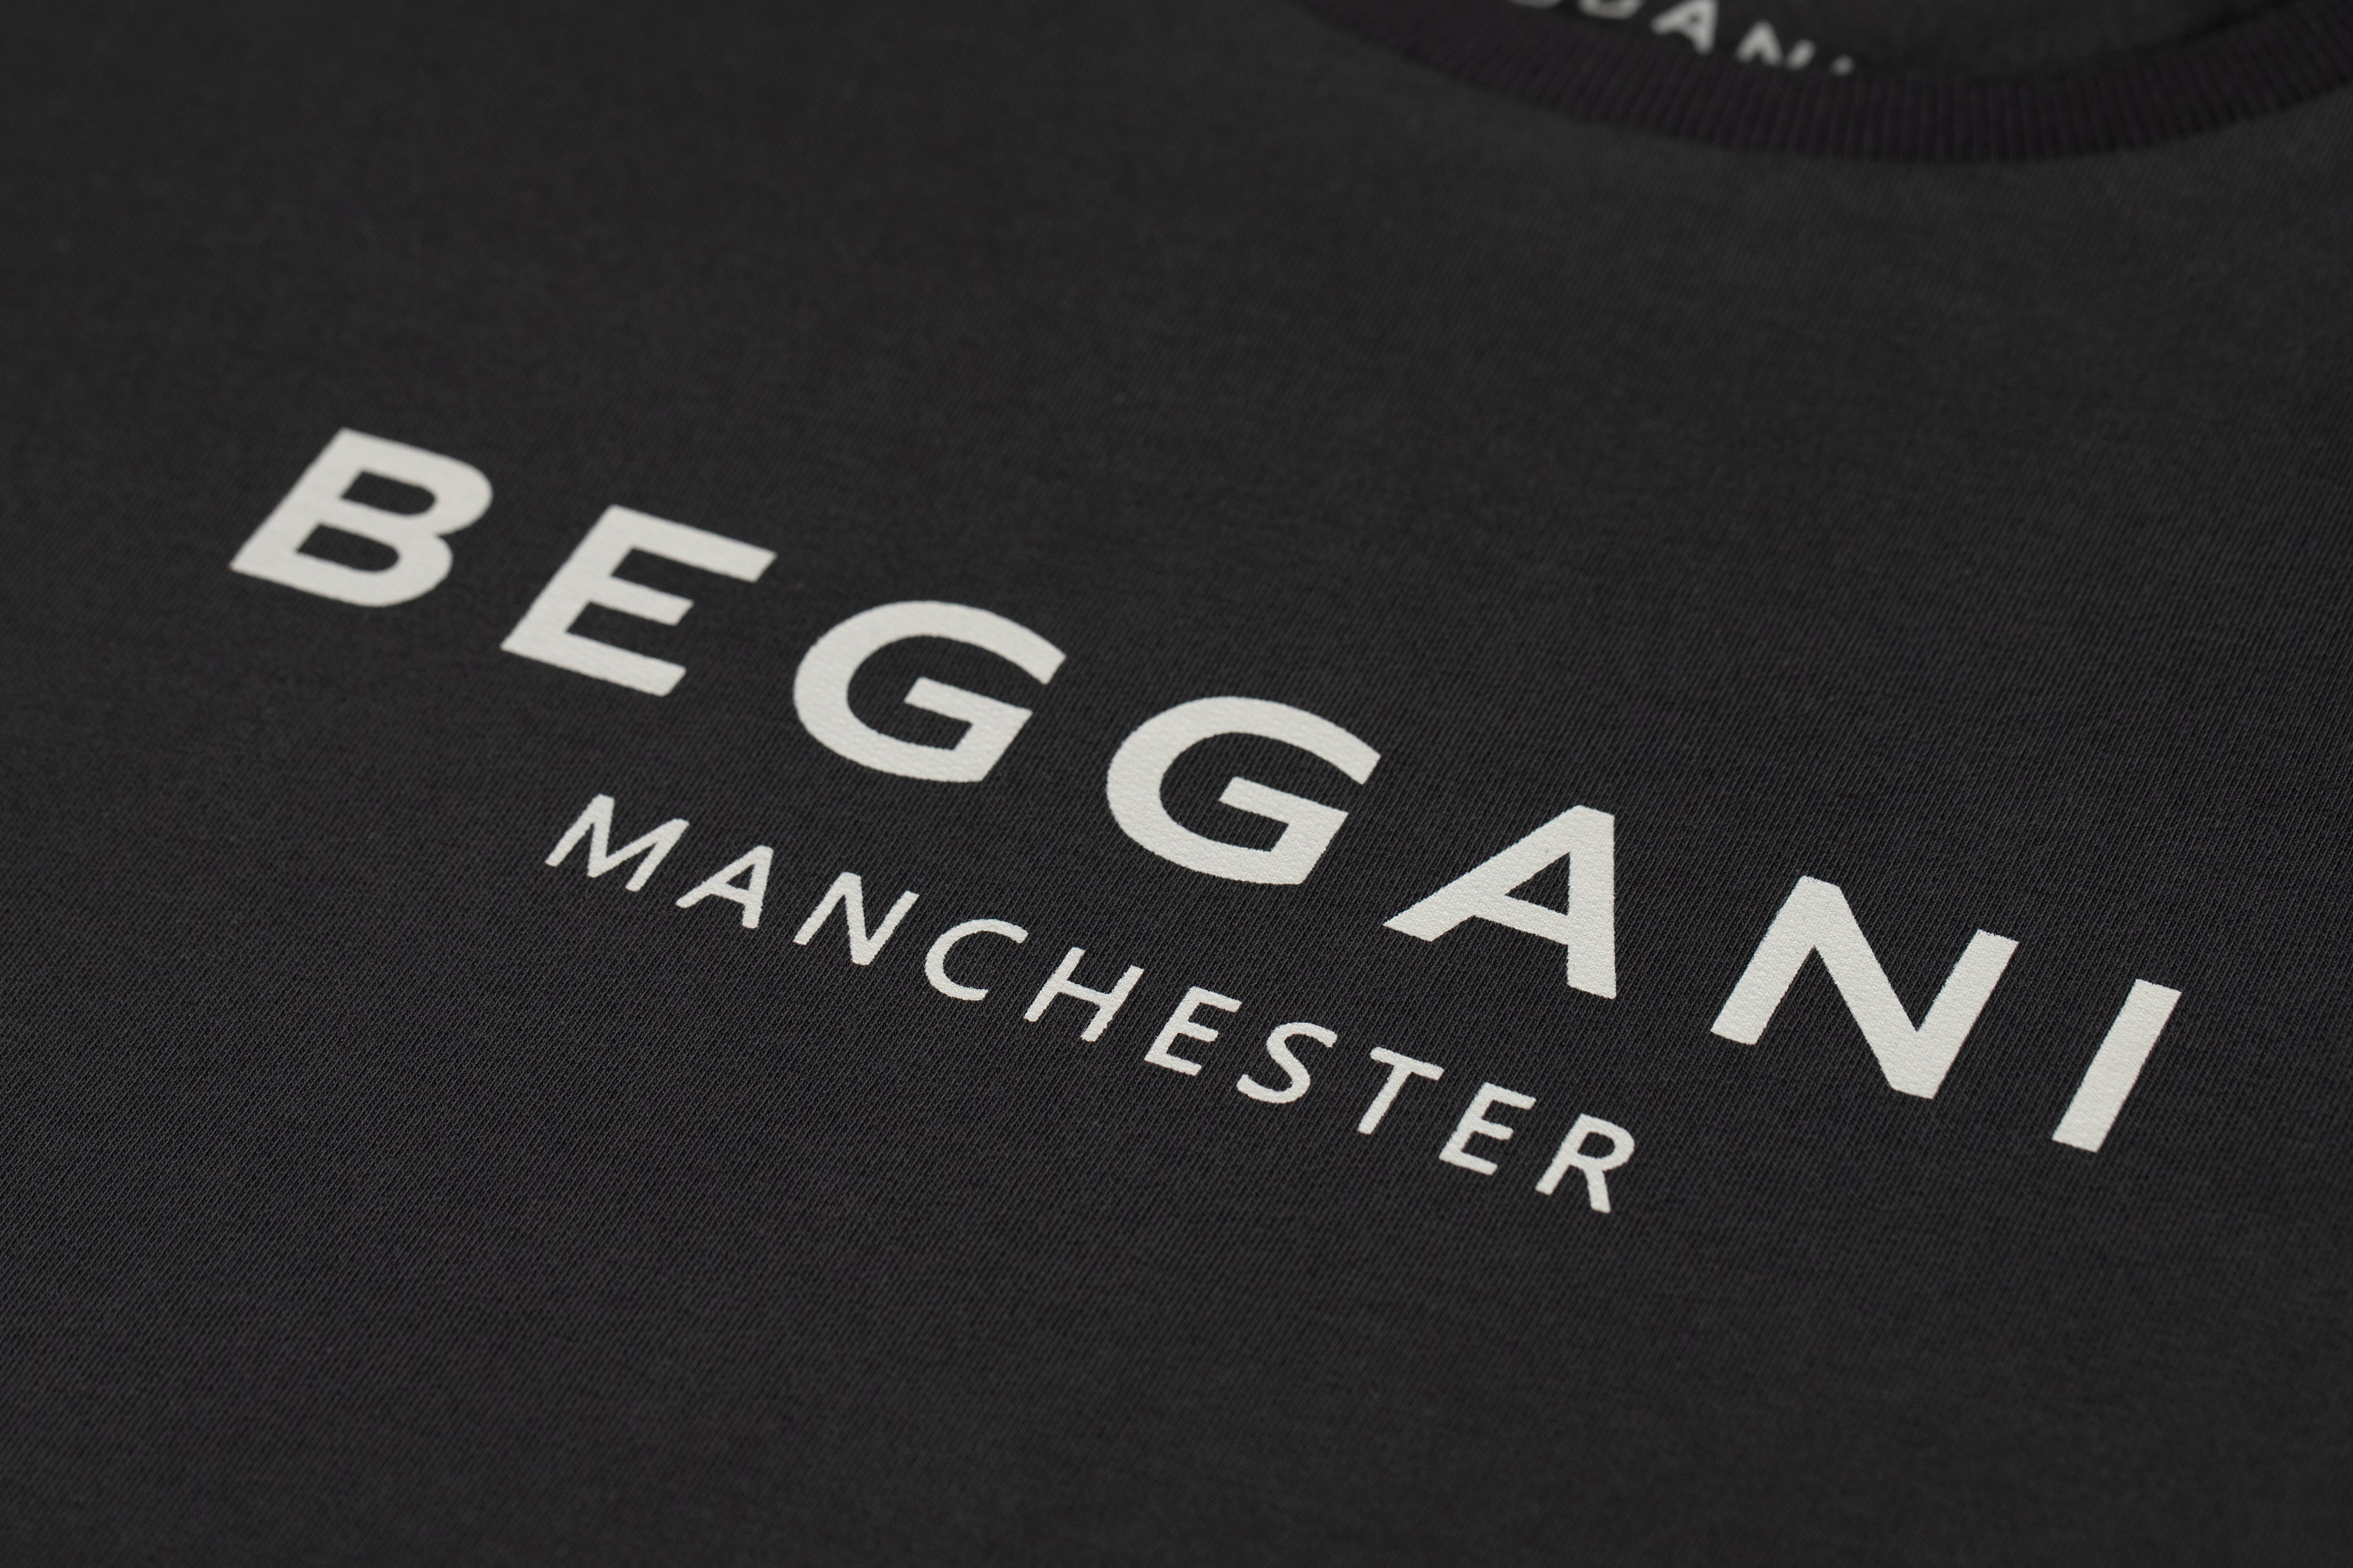 Men's Long-sleeved T-shirt BEGGANI Manchester